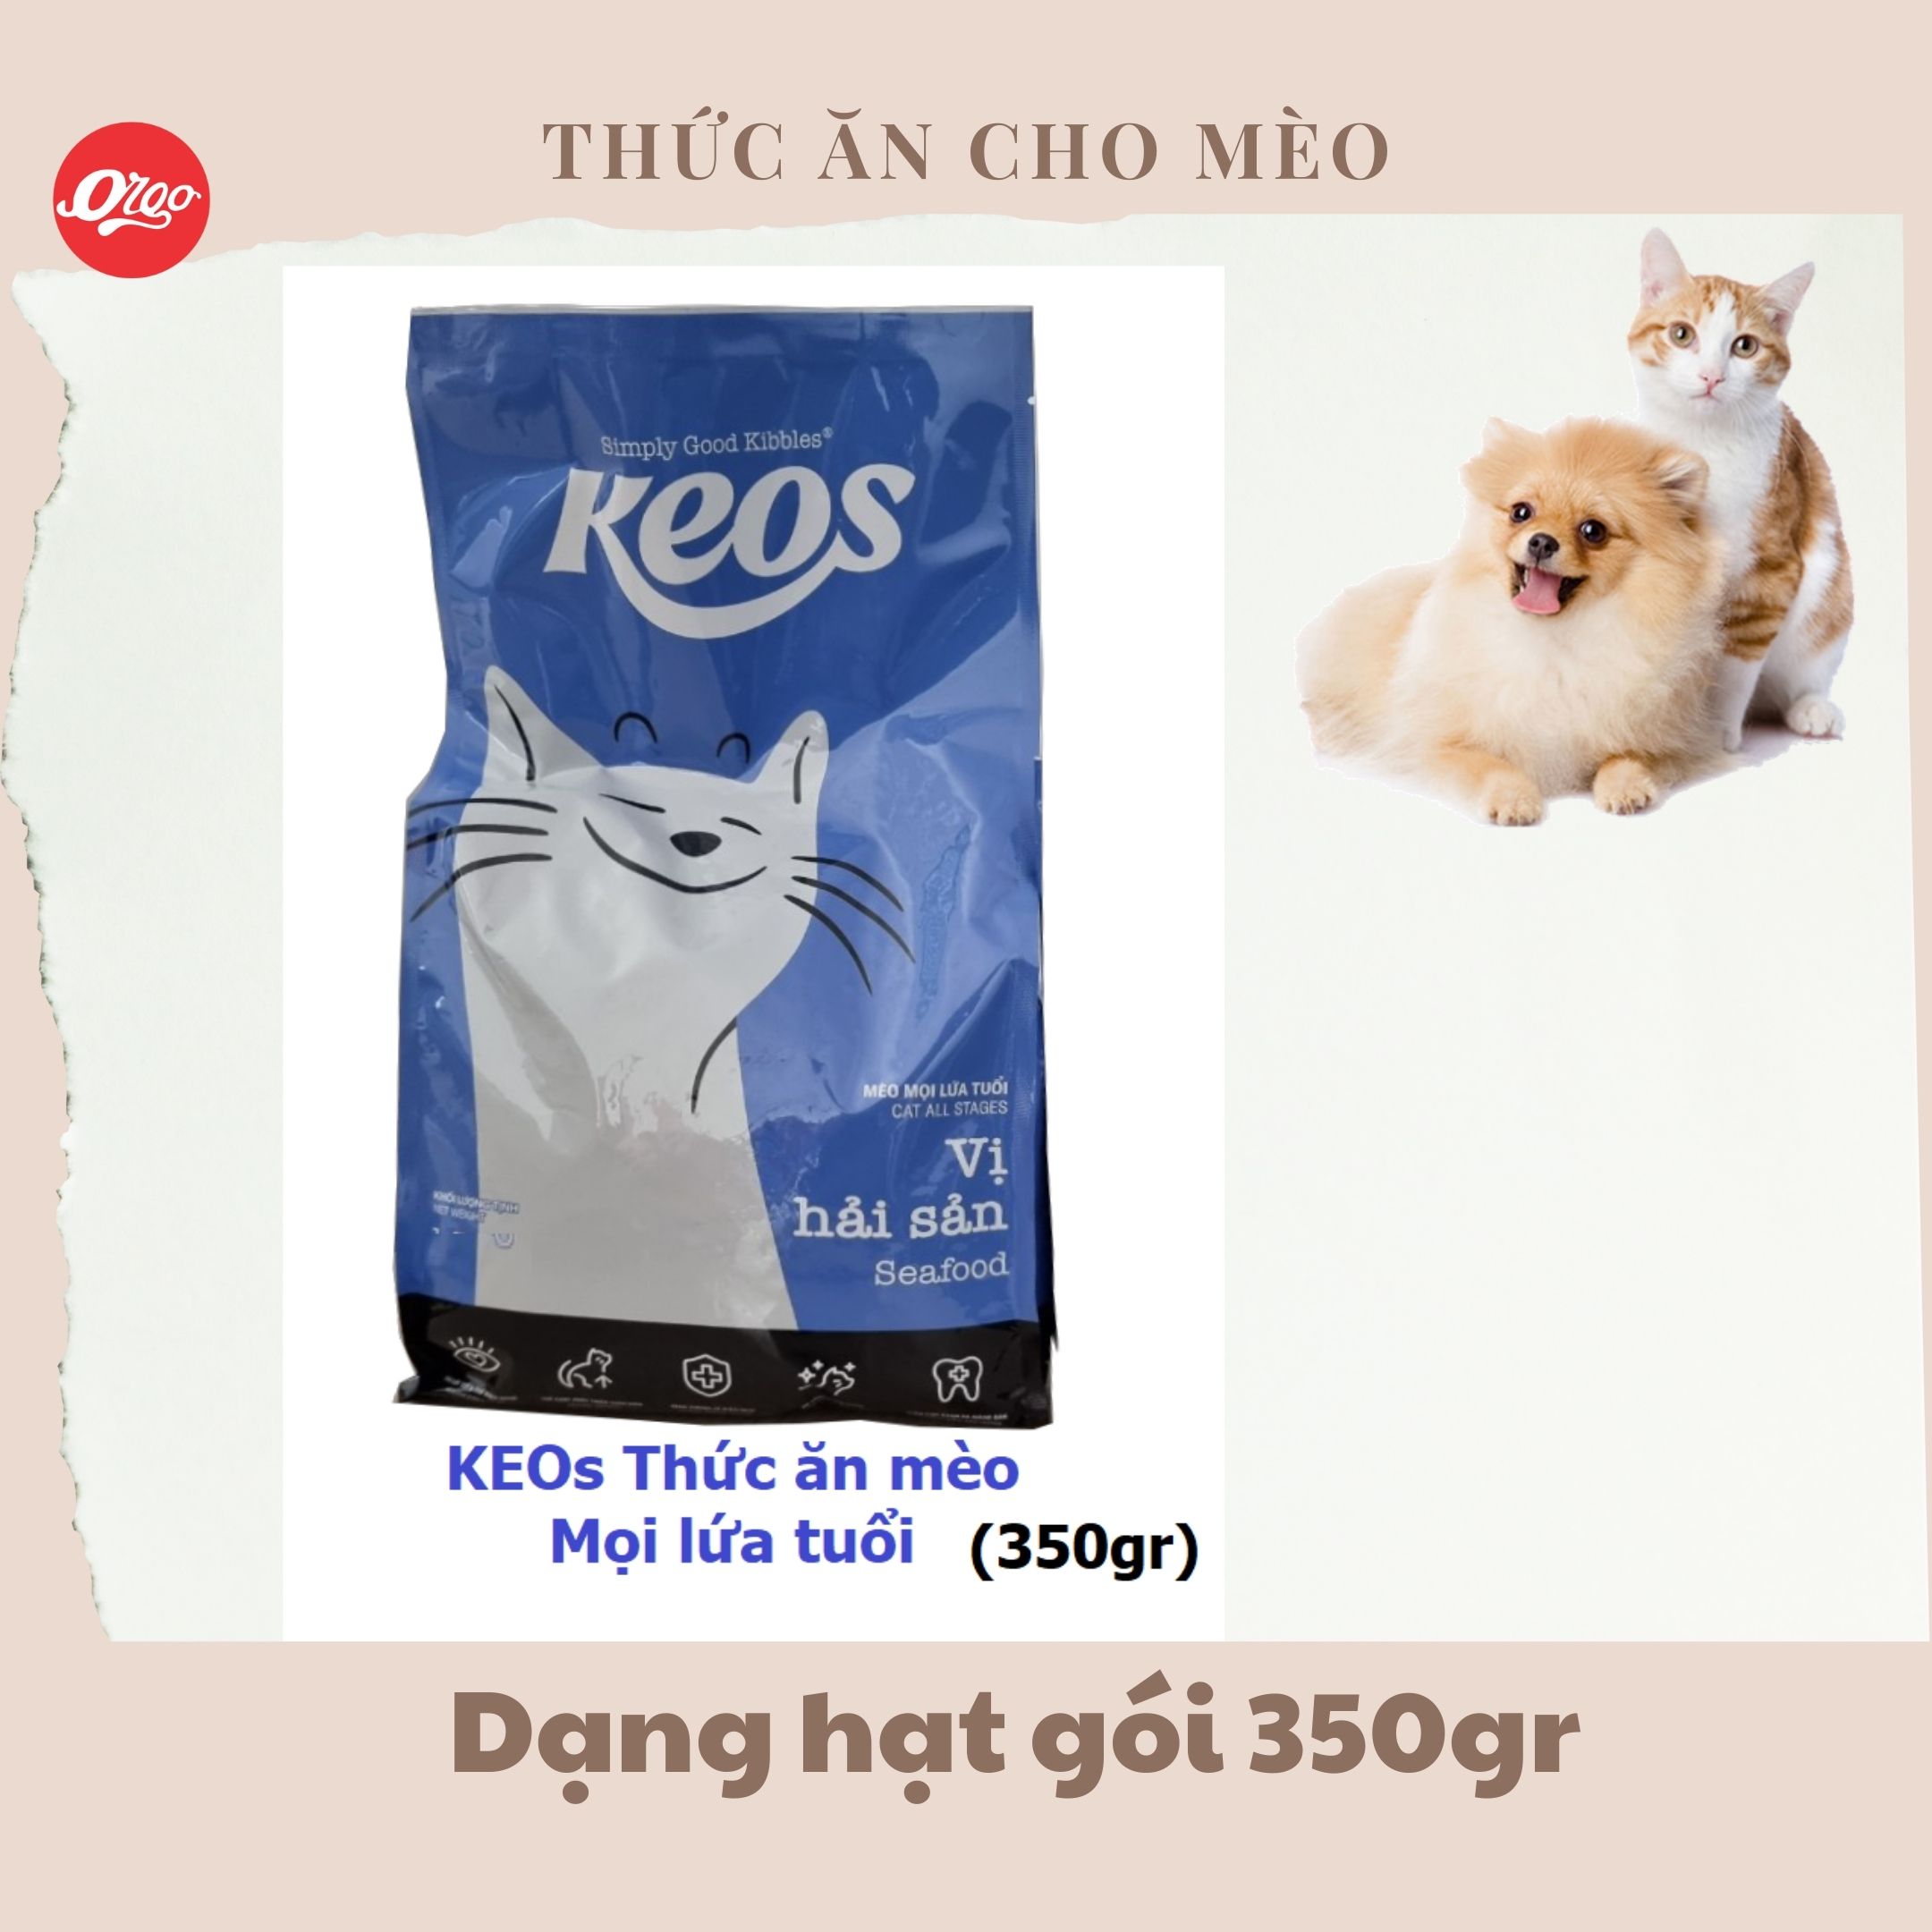 Thức ăn cho mèo KEOS 350gr Orgo dạng hạt cho mèo mọi lứa tuổi